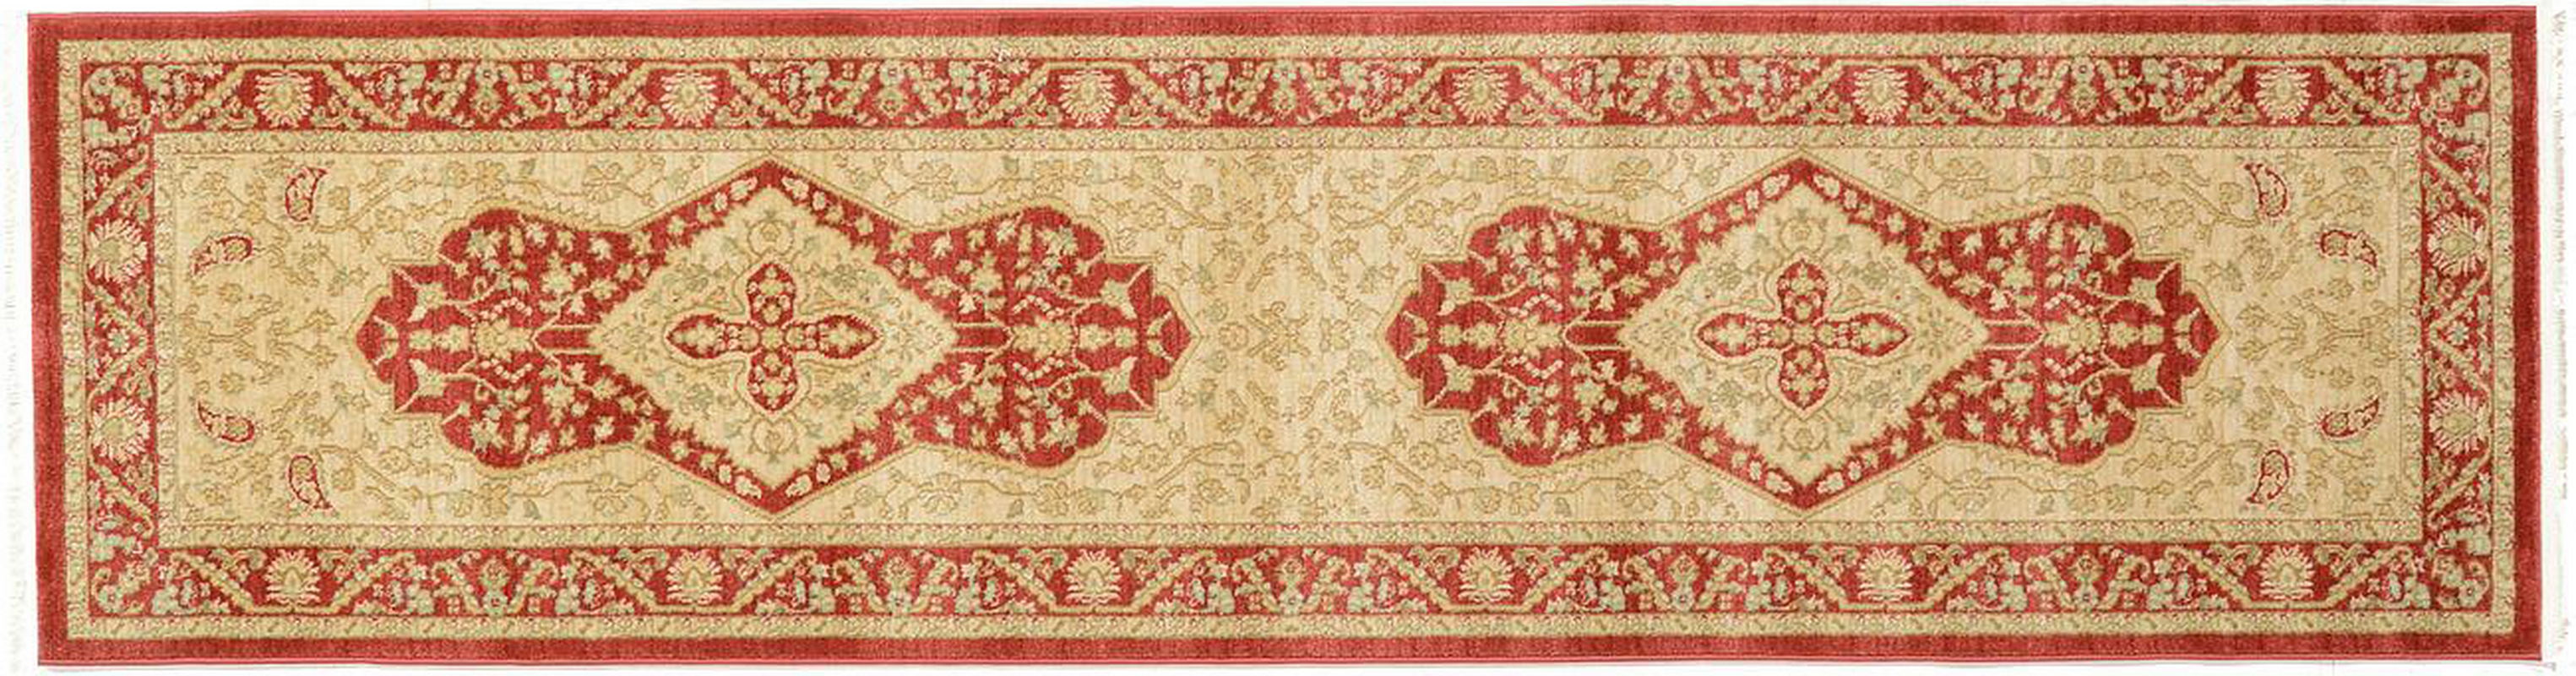 古典经典地毯ID9700